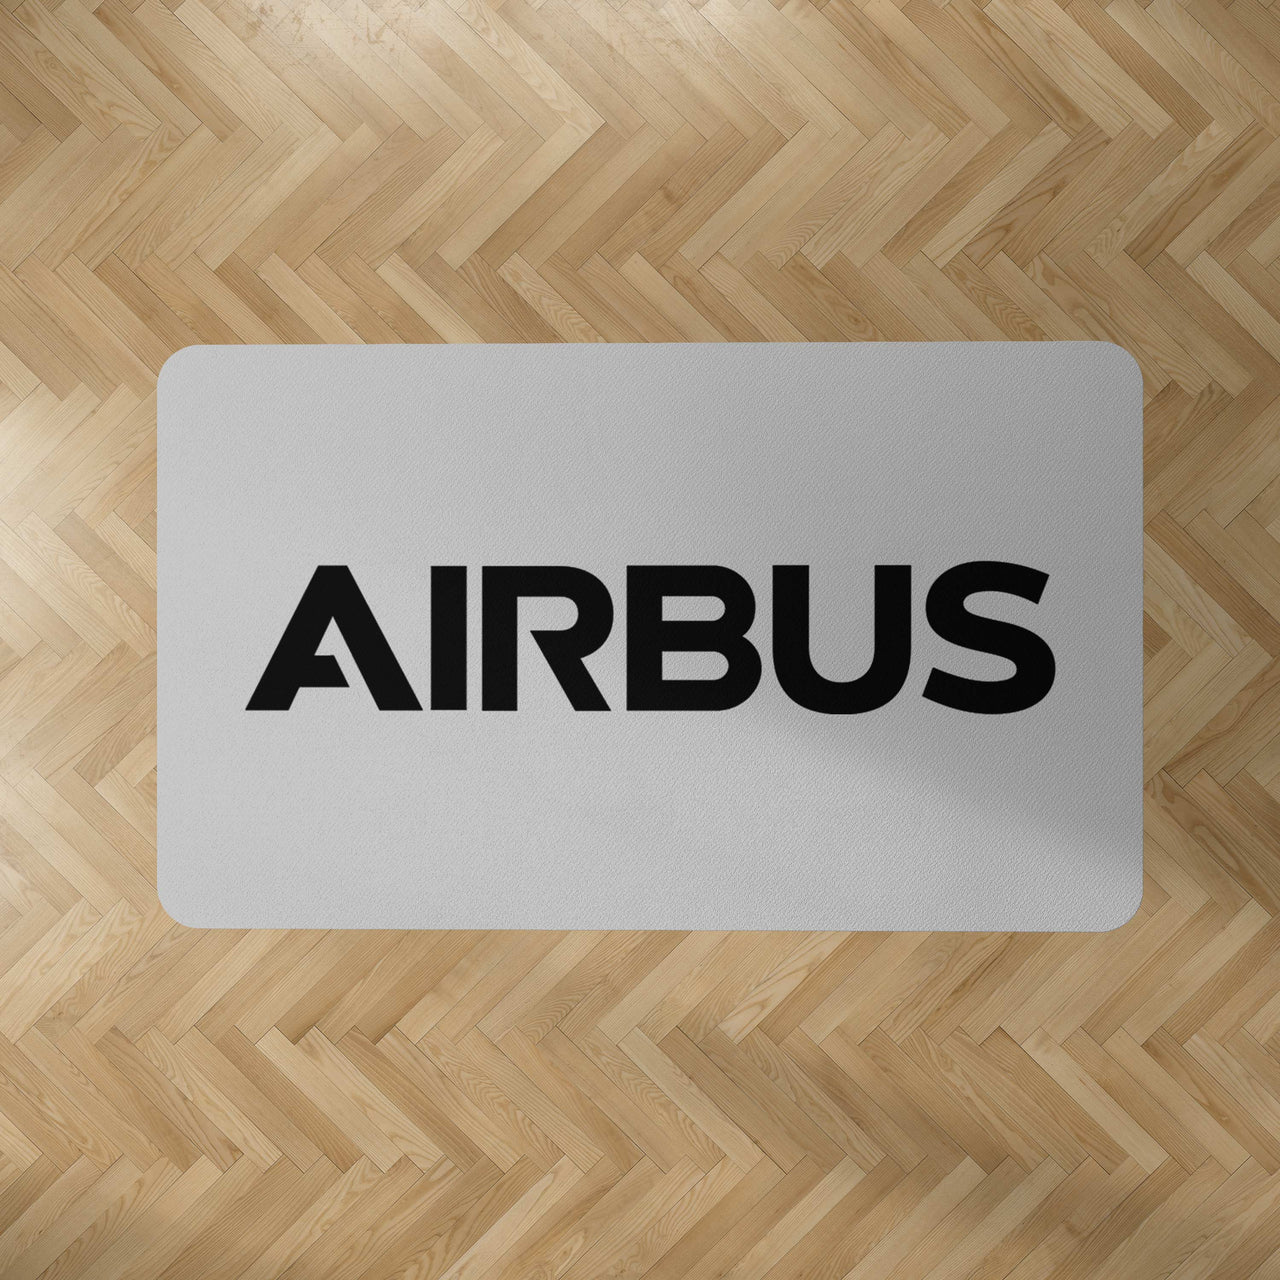 Airbus & Text Designed Carpet & Floor Mats